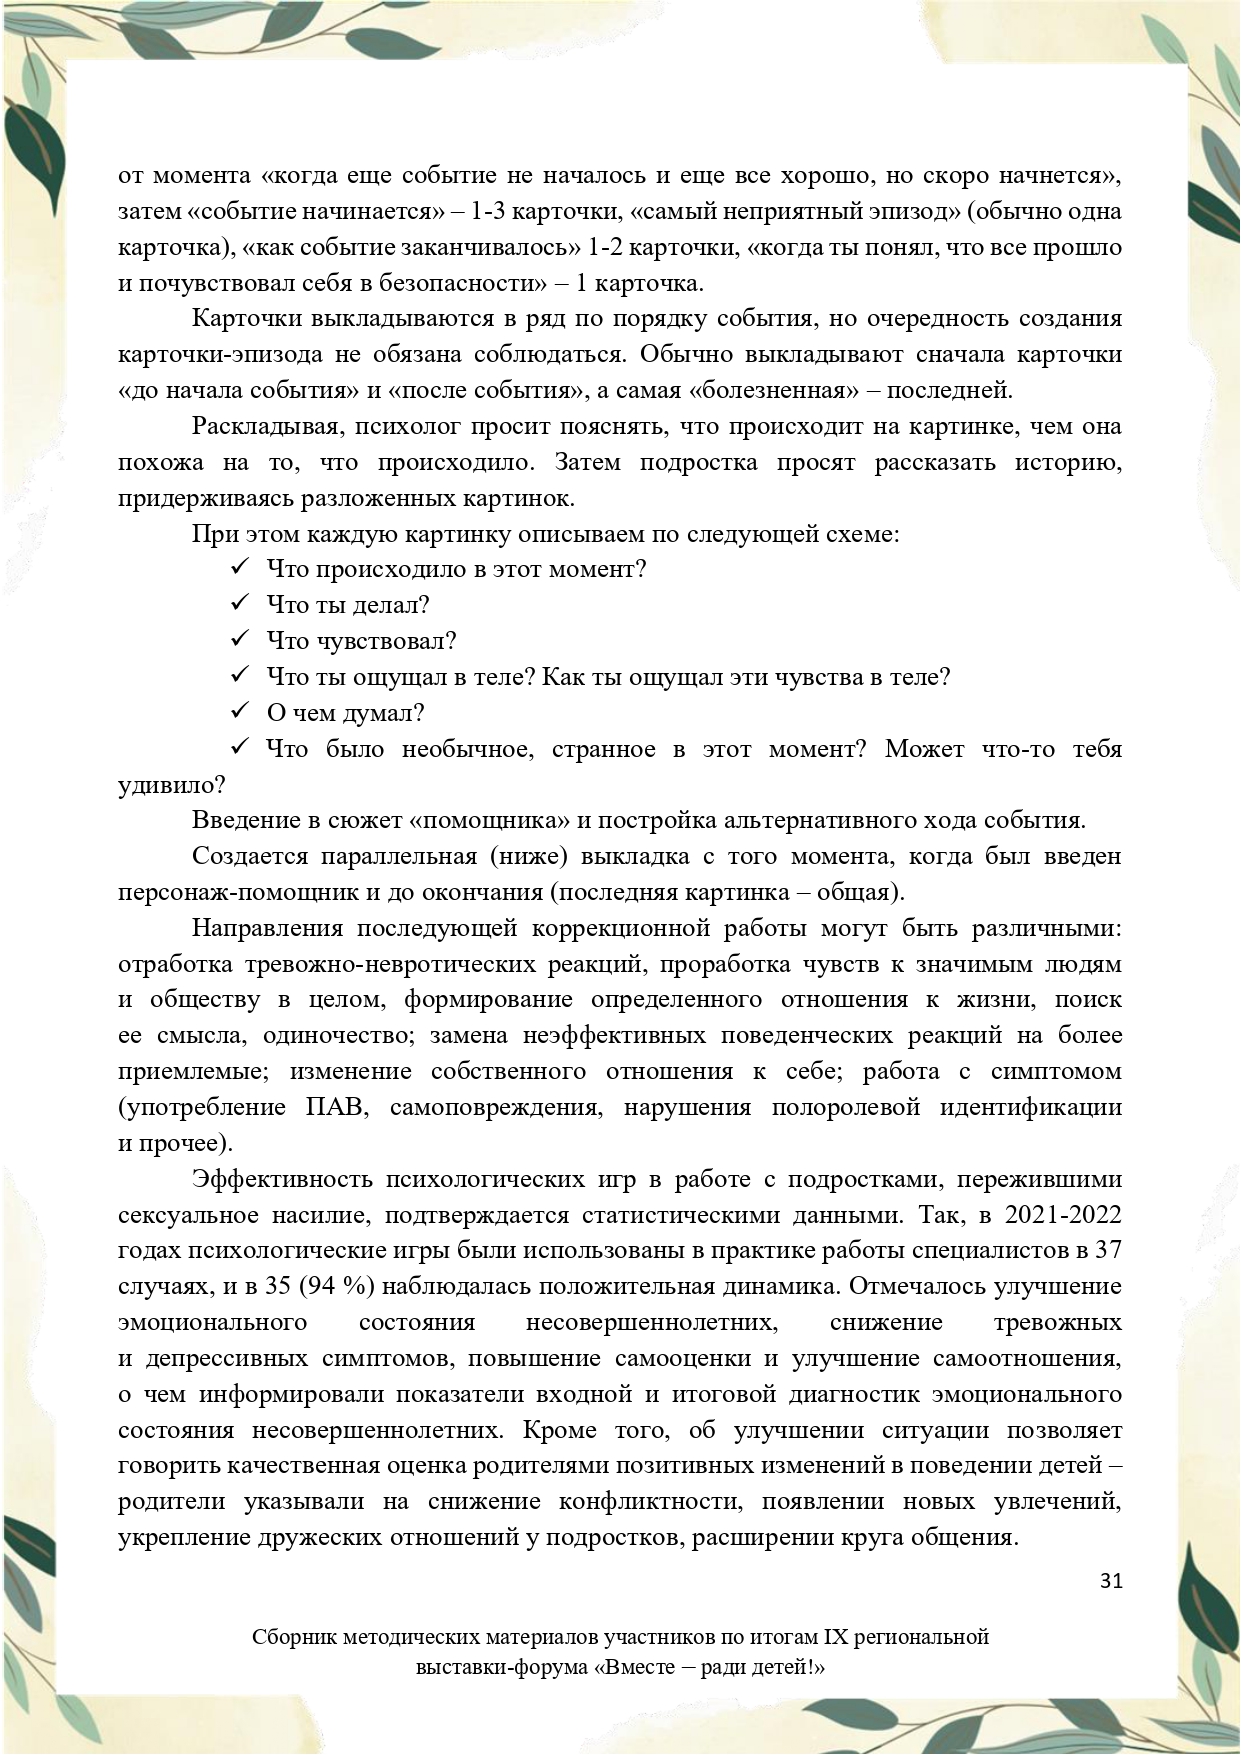 Sbornik_metodicheskikh_materialov_uchastnikov_IX_regionalnoy_vystavki-foruma_Vmeste__radi_detey_33__2023_page-0031